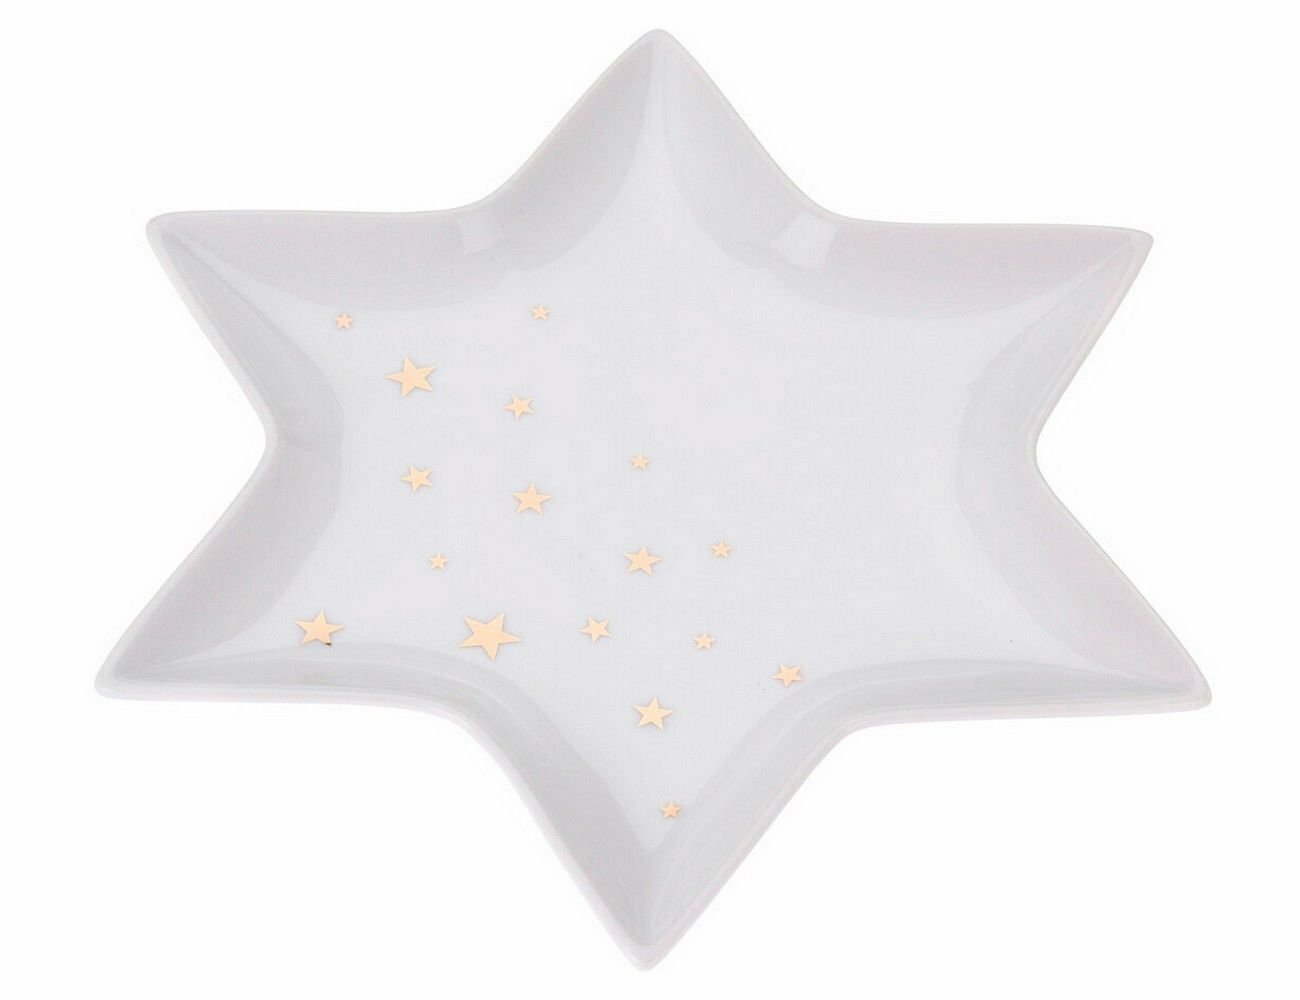 Сервировочное блюдо-звёздочка золотой звездопад, фарфор, 28 см, Koopman International